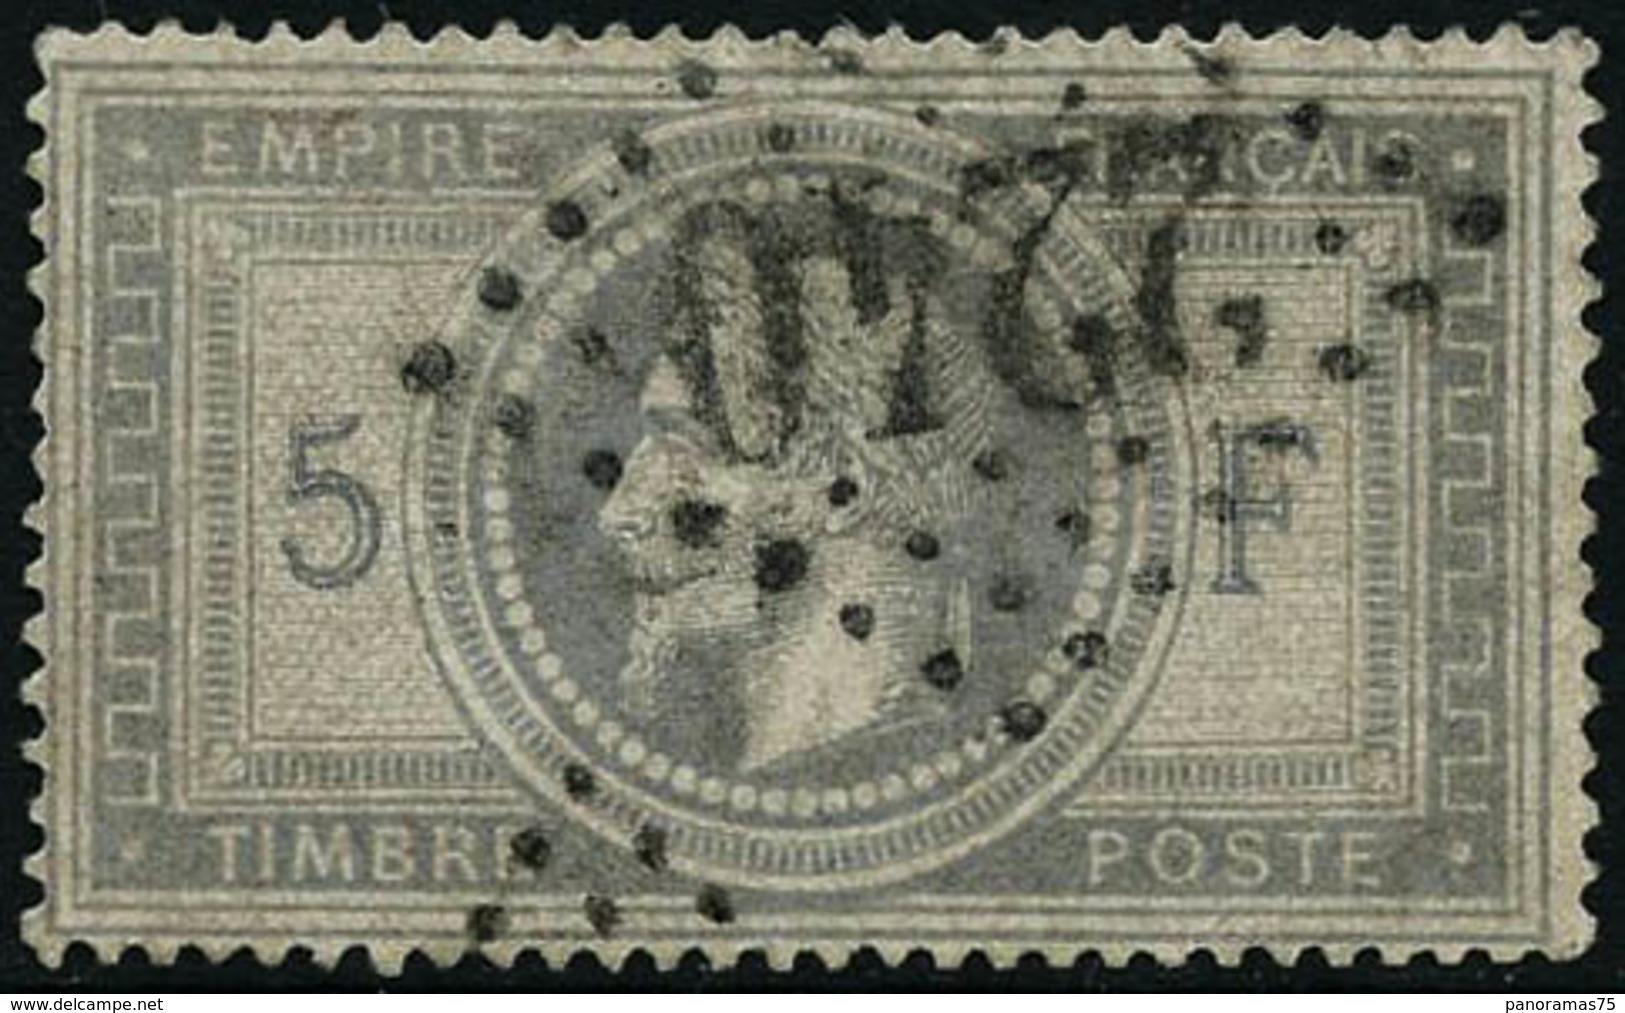 Oblit. N°33 5F Empire - TB - 1863-1870 Napoléon III. Laure